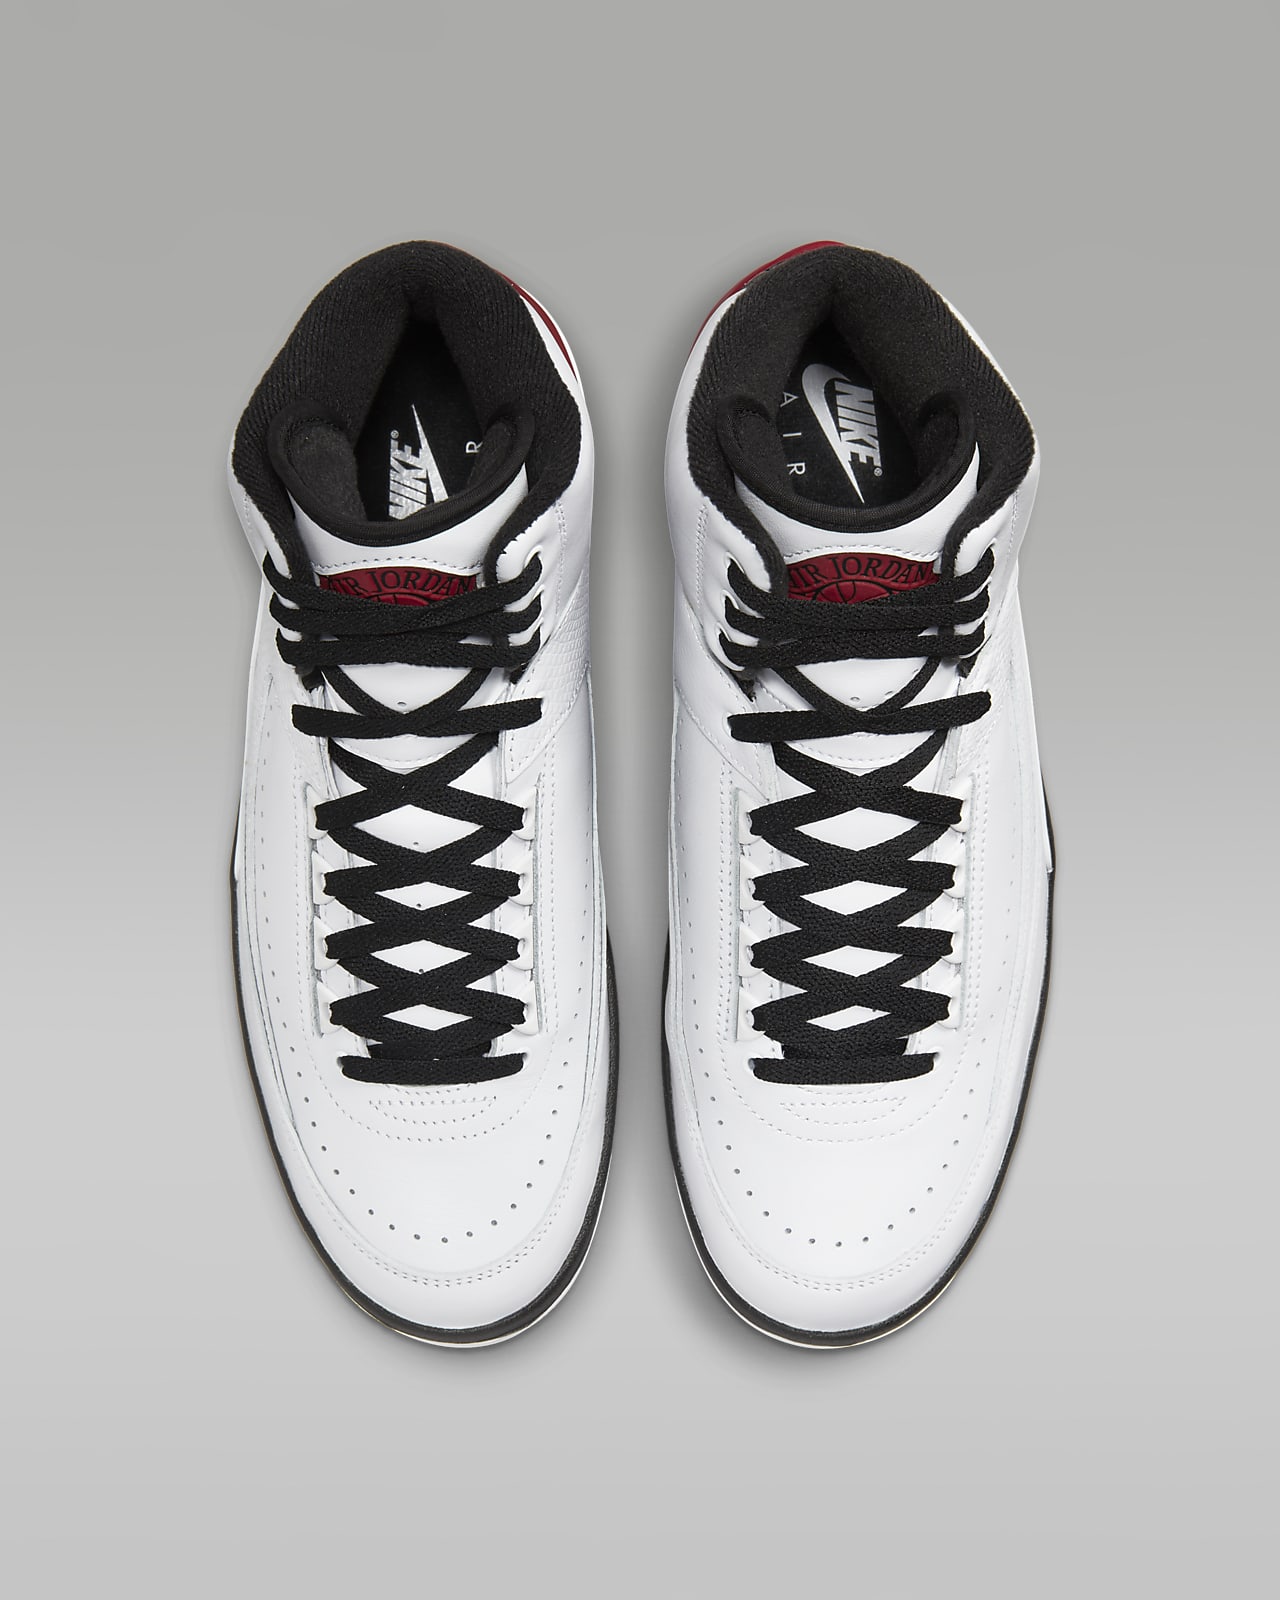 Chaussures Air Jordan 2 Retro Blanc pour Homme